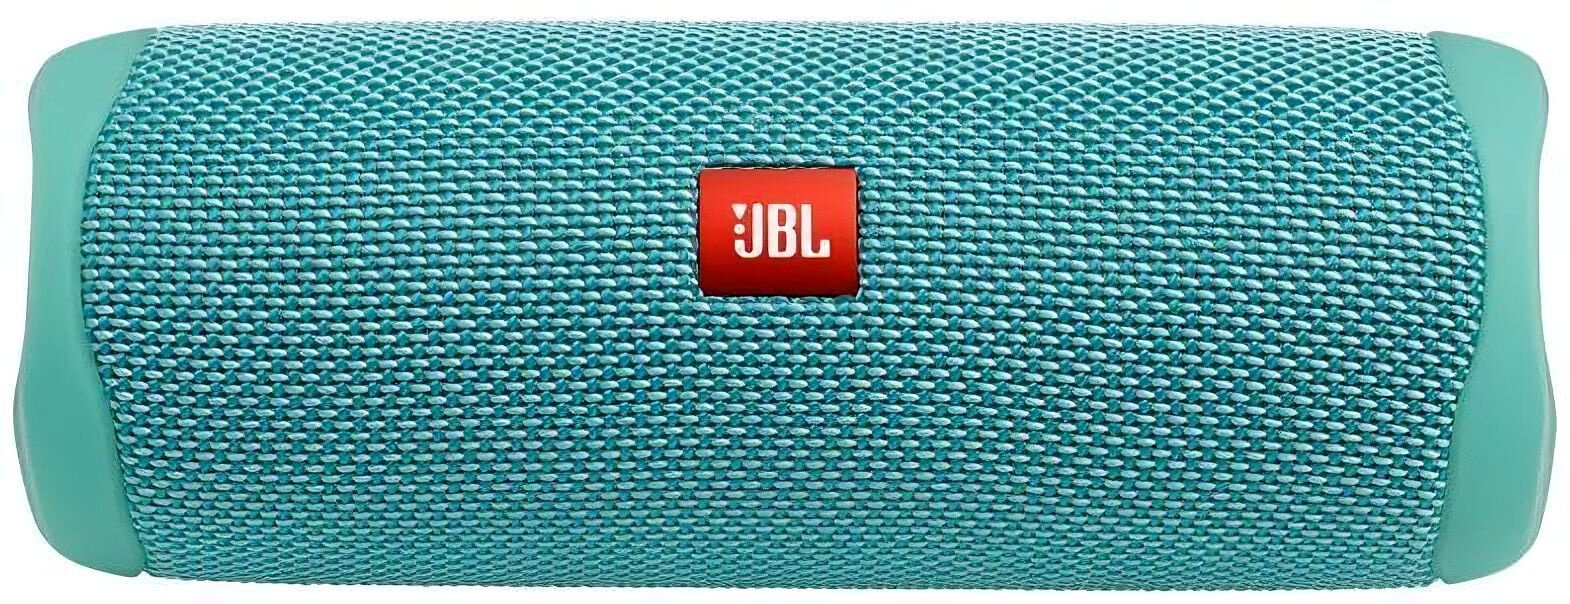 Портативная колонка JBL Flip 5, 20Вт, бирюзовый